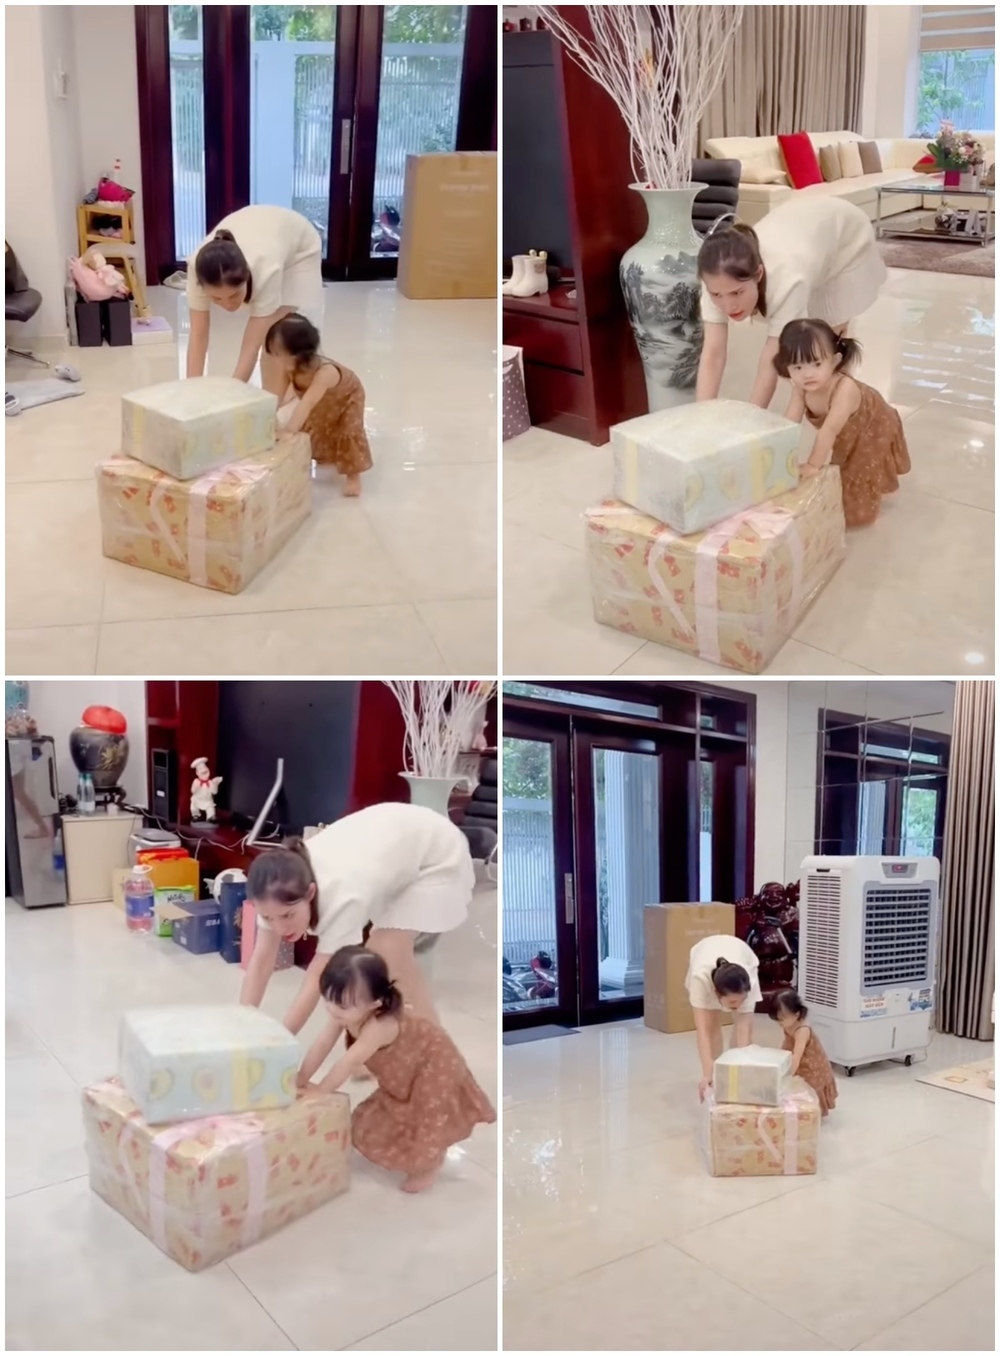  
Bé Winnie nhanh nhẹn, phụ giúp Đông Nhi đẩy những hộp quà to vào nhà một cách hứng thú. (Ảnh: FB Đông Nhi)